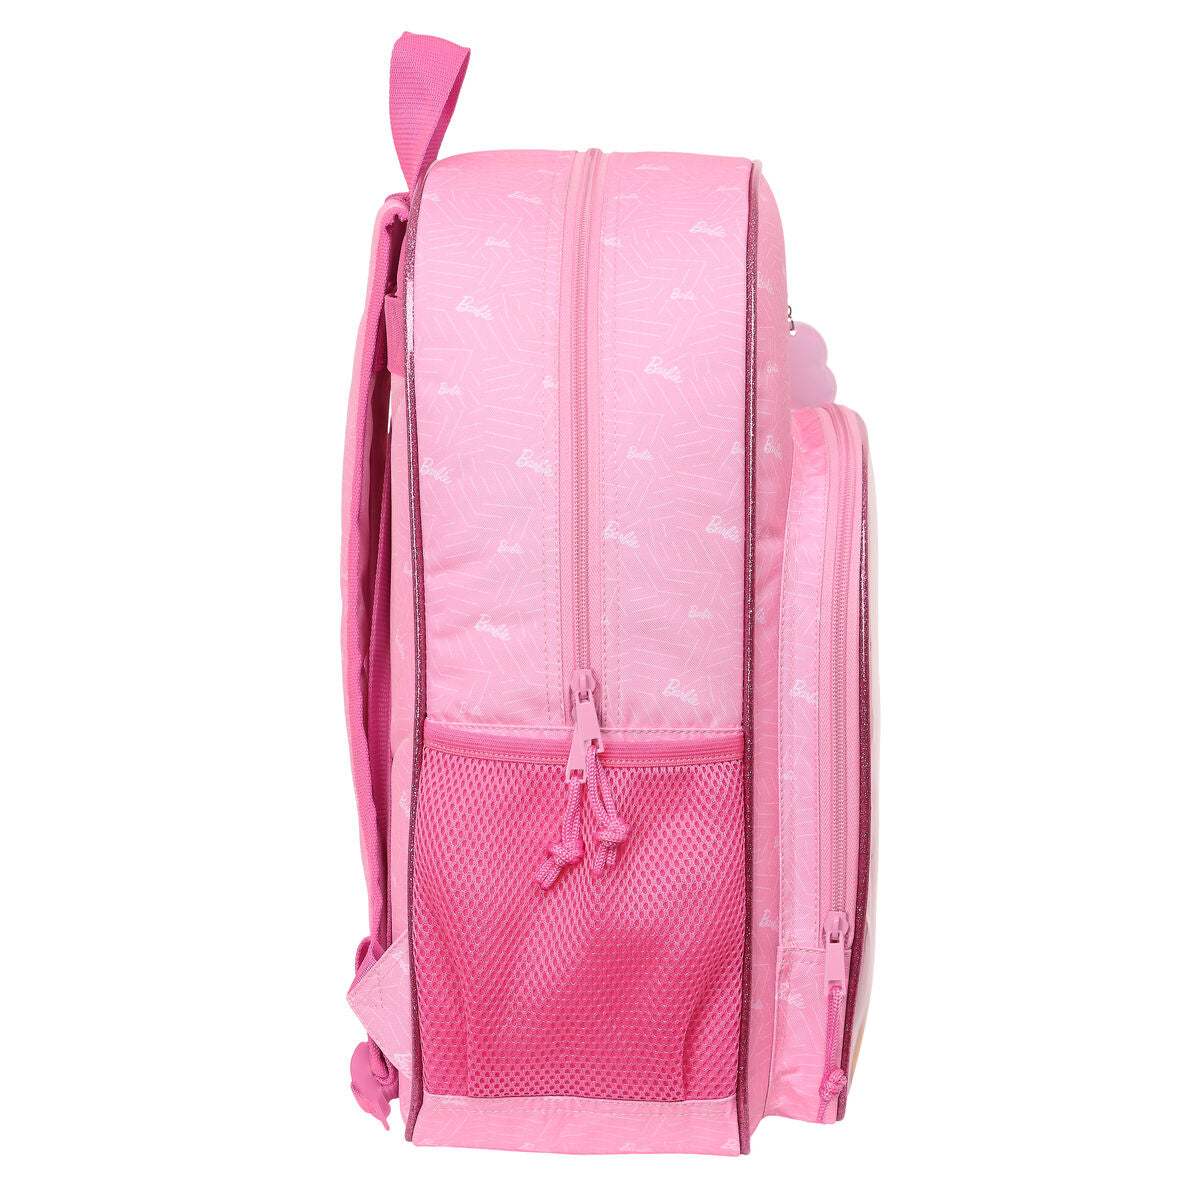 Schulrucksack Barbie Girl Rosa 14 L